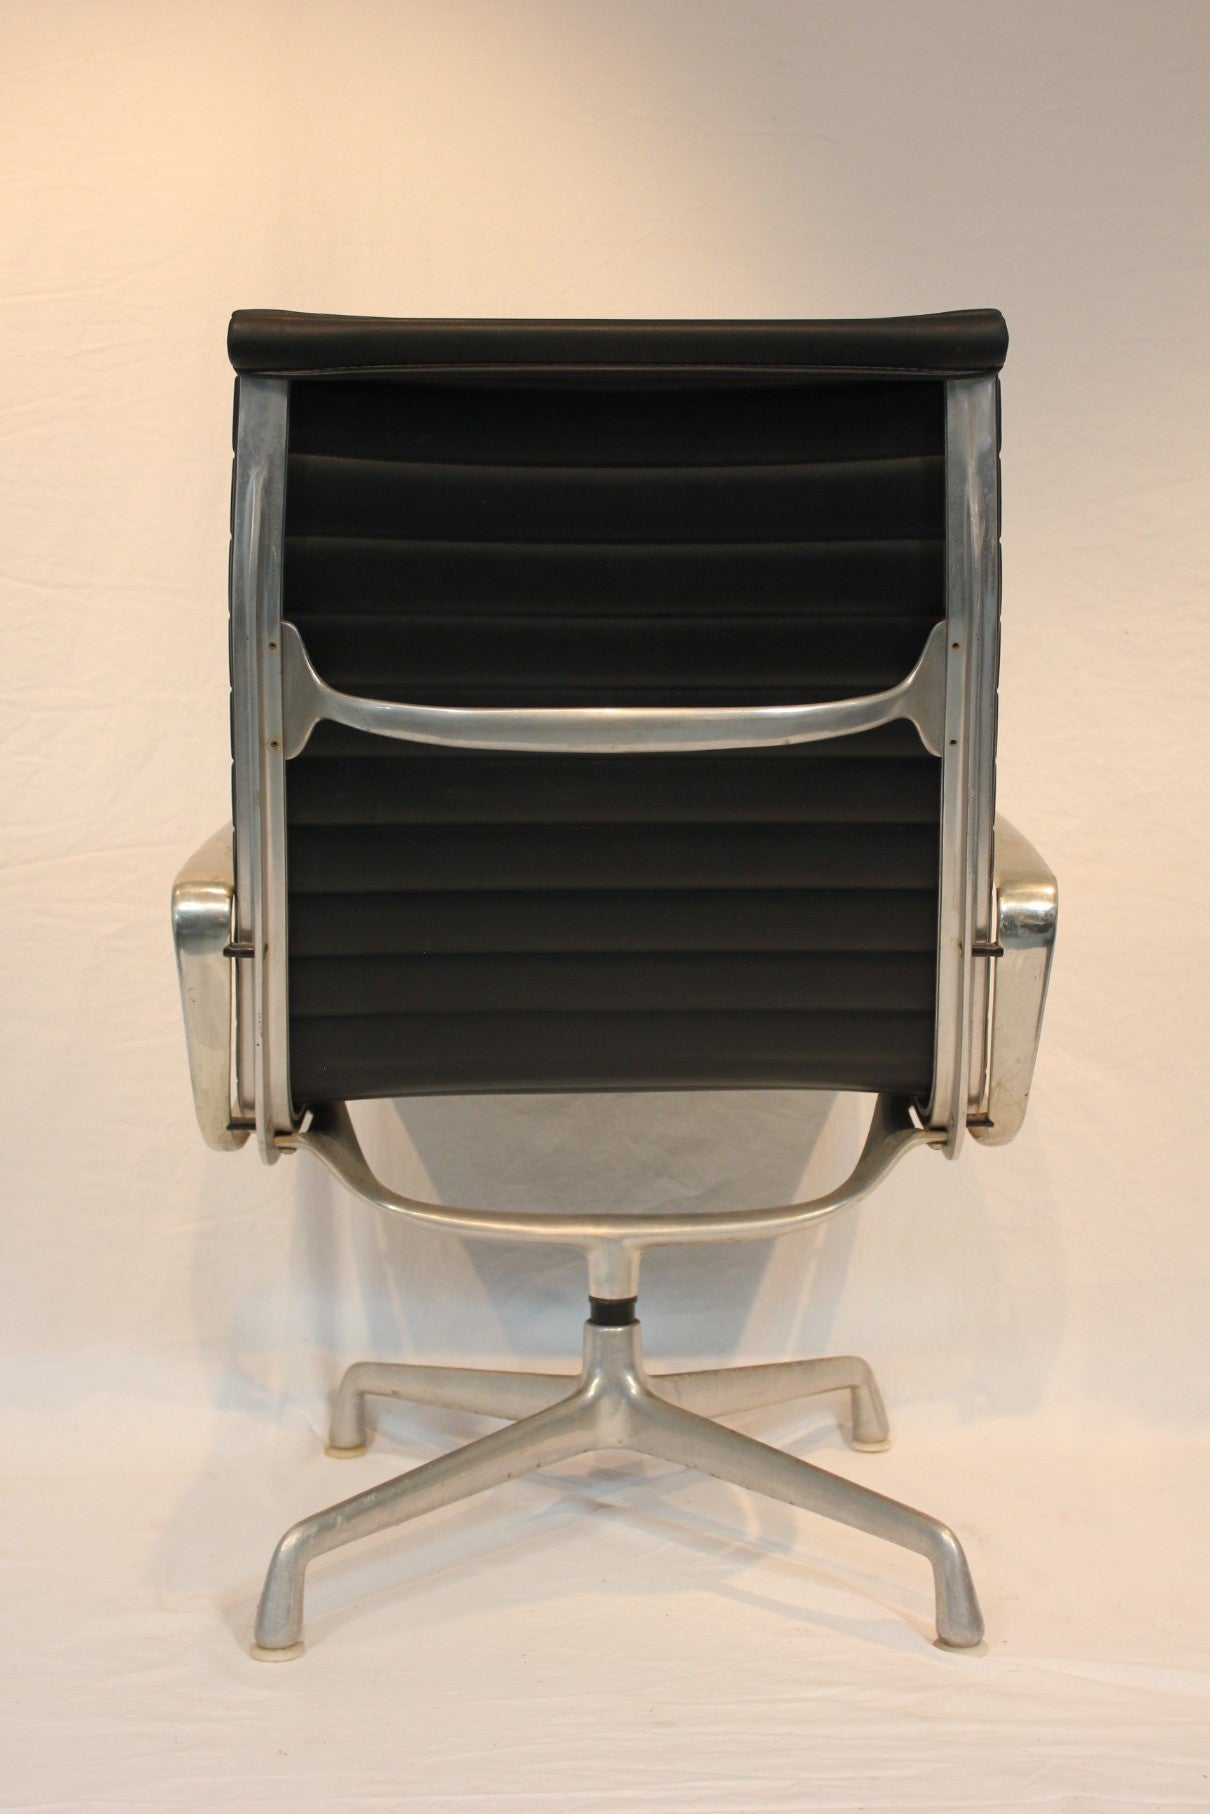 AF2-264: Vintage Herman Miller Eames Aluminum Lounge Chair